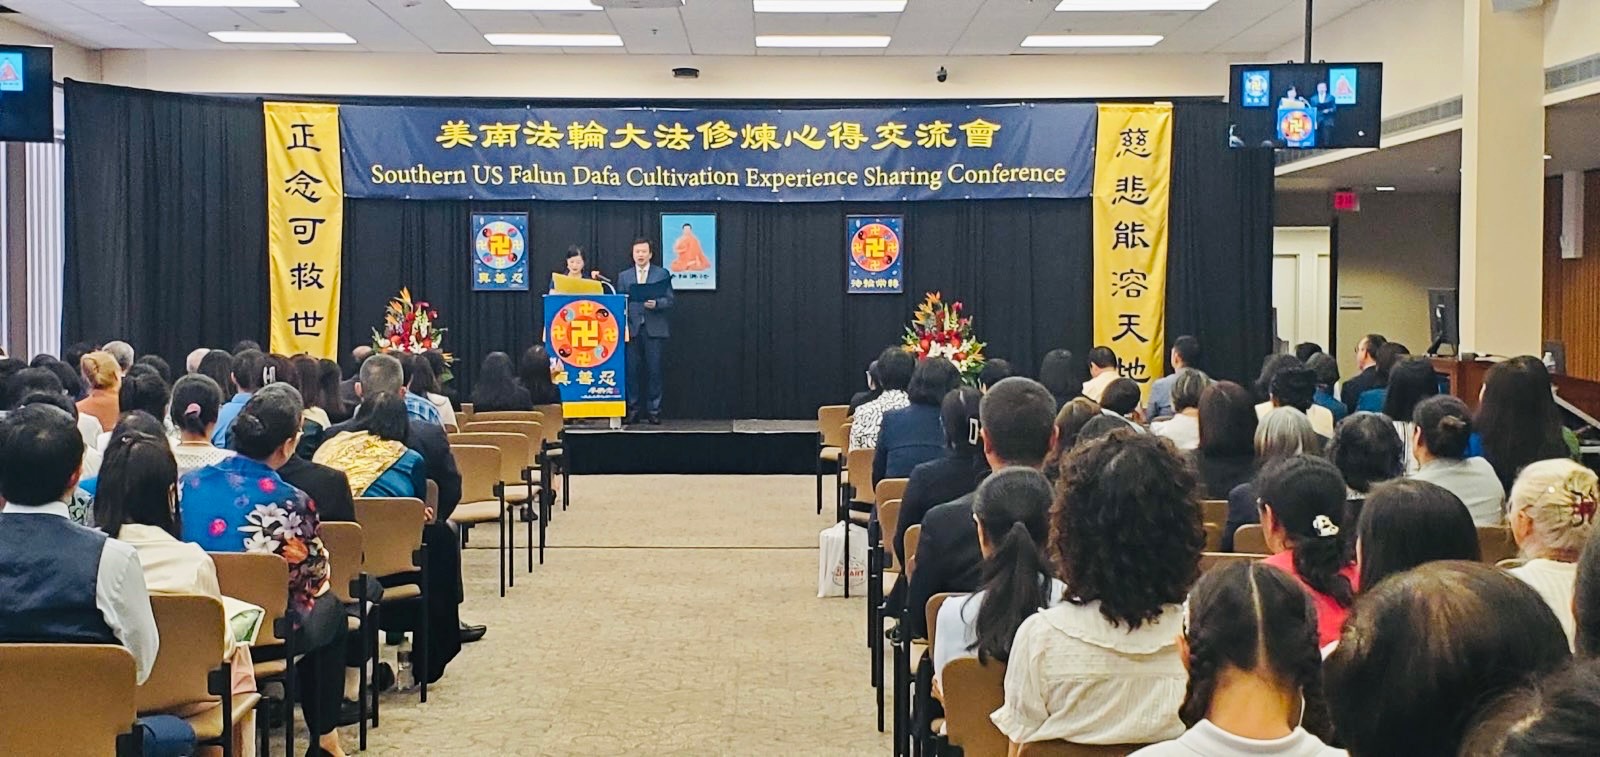 Image for article Houston, Texas: mejorando juntos durante la Conferencia de Falun Dafa del Sur de EE. UU.